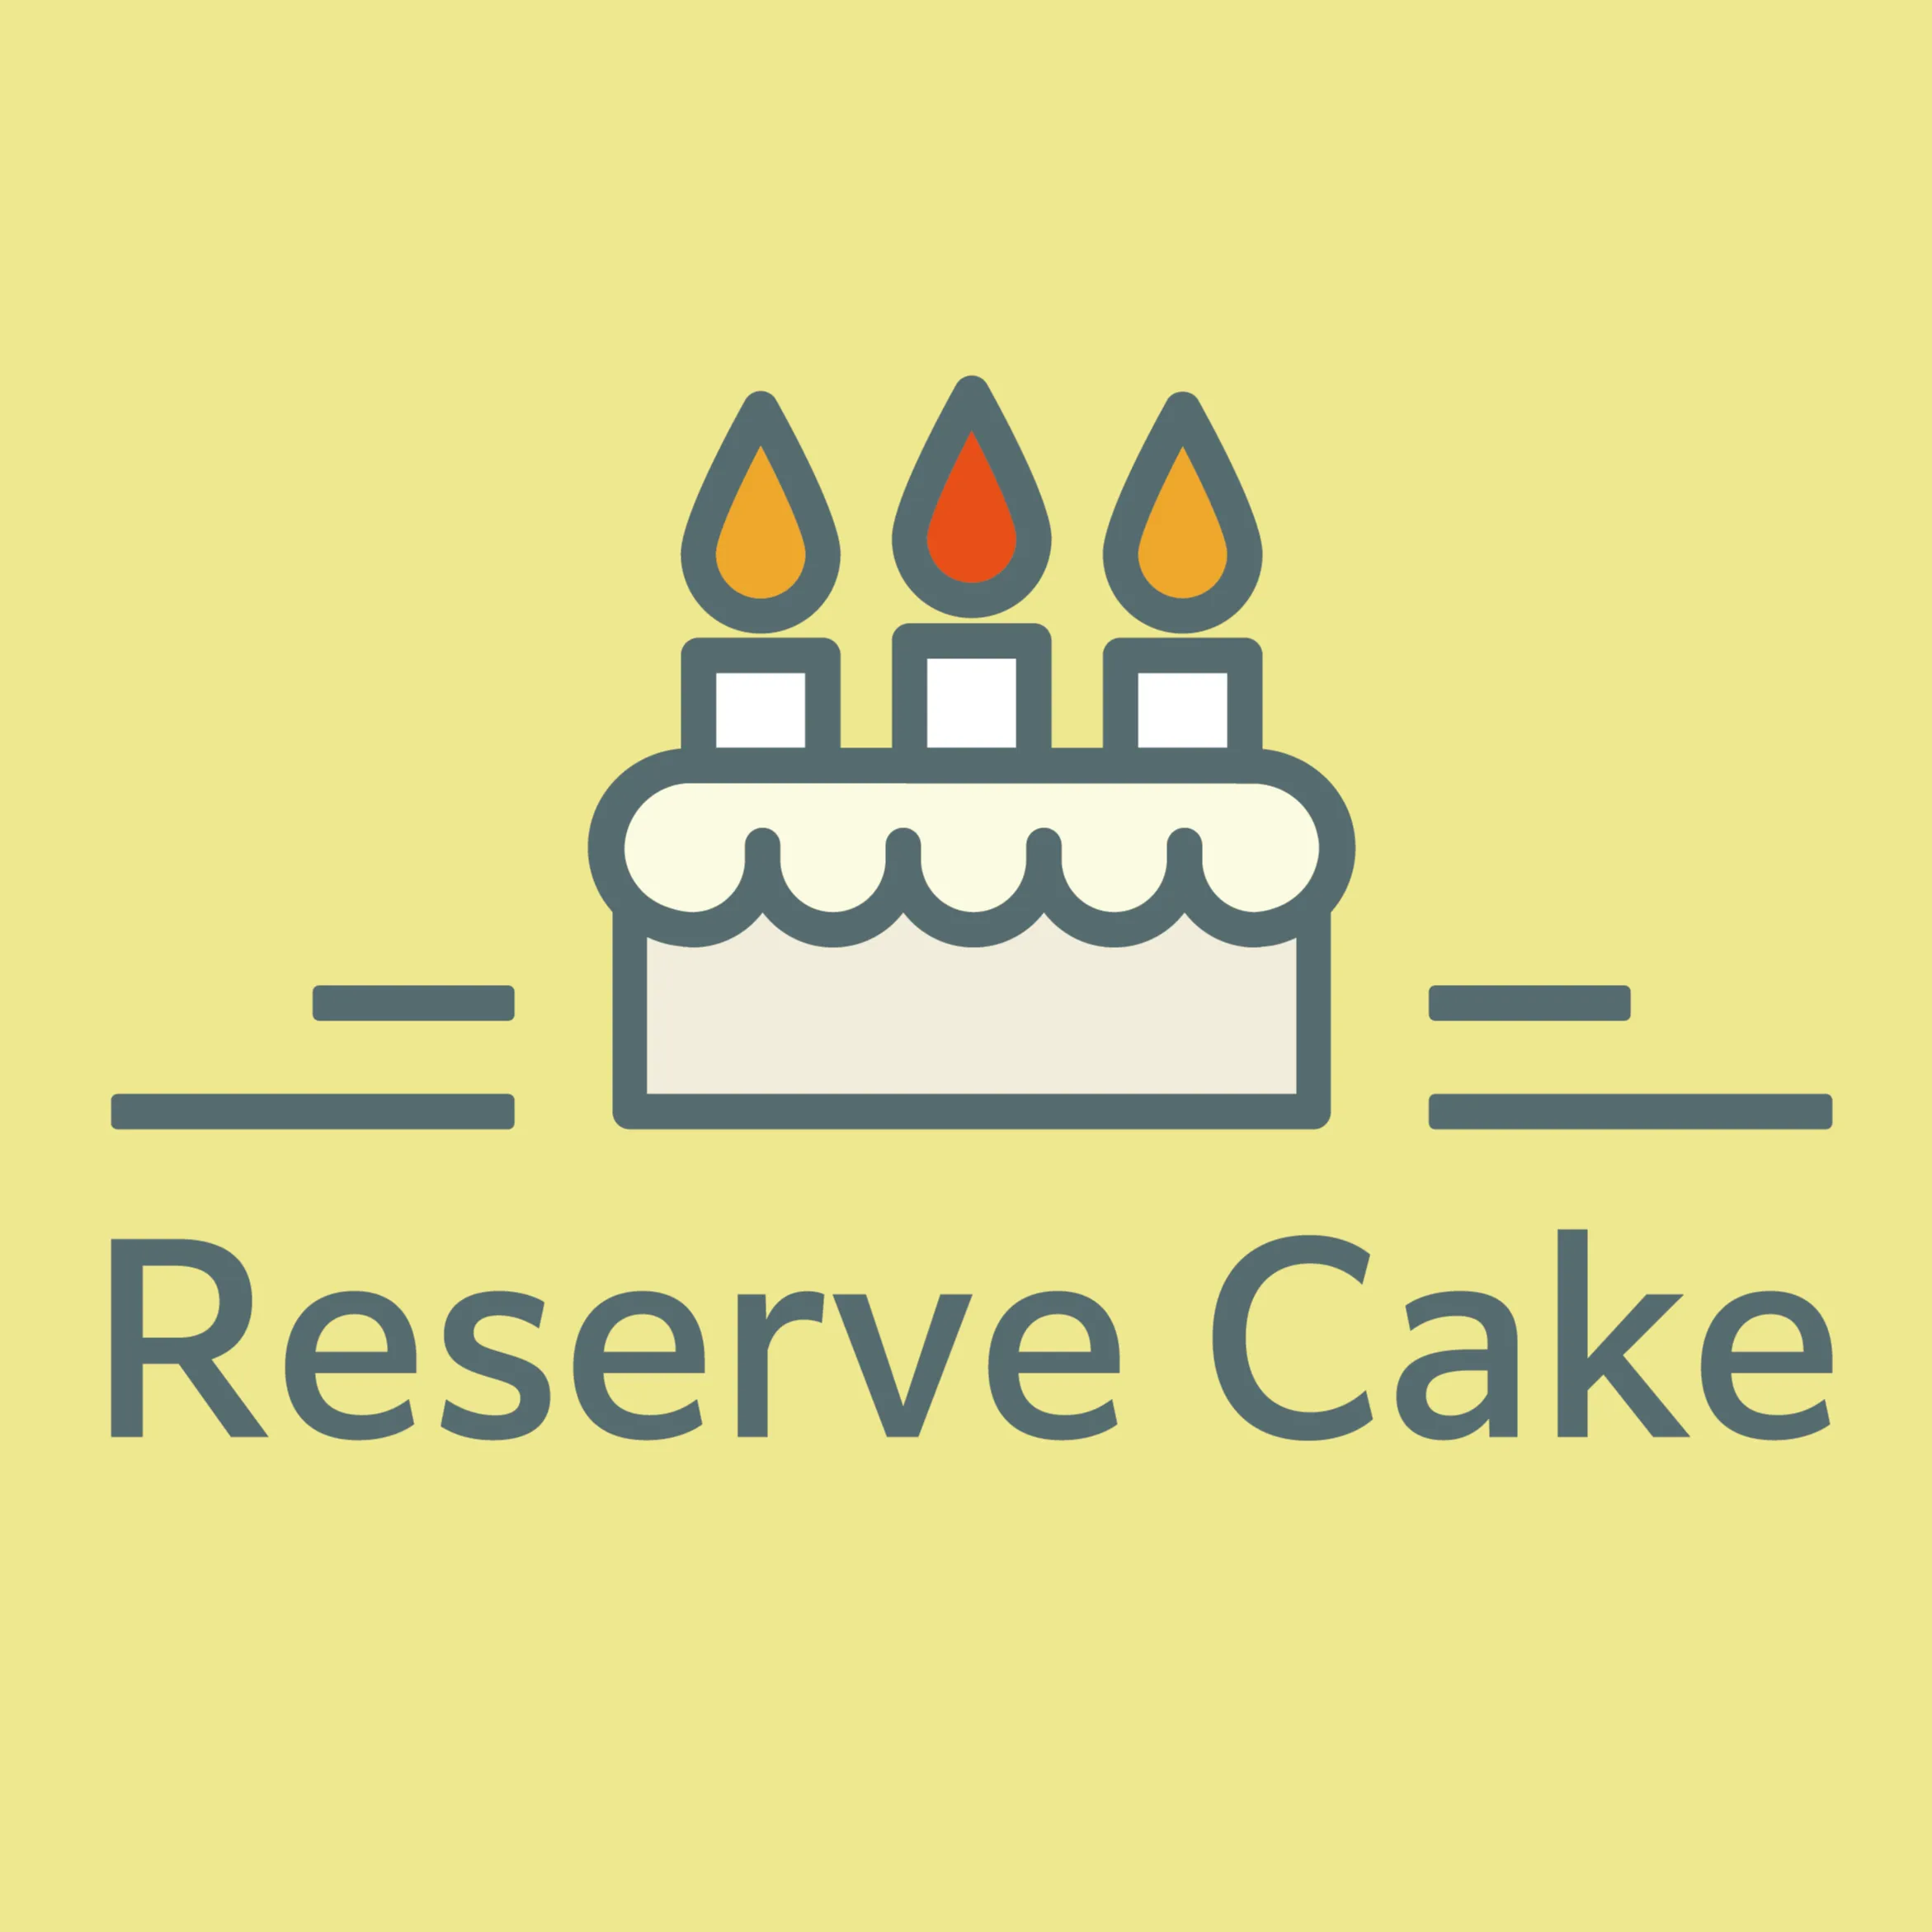 Reserve Cake